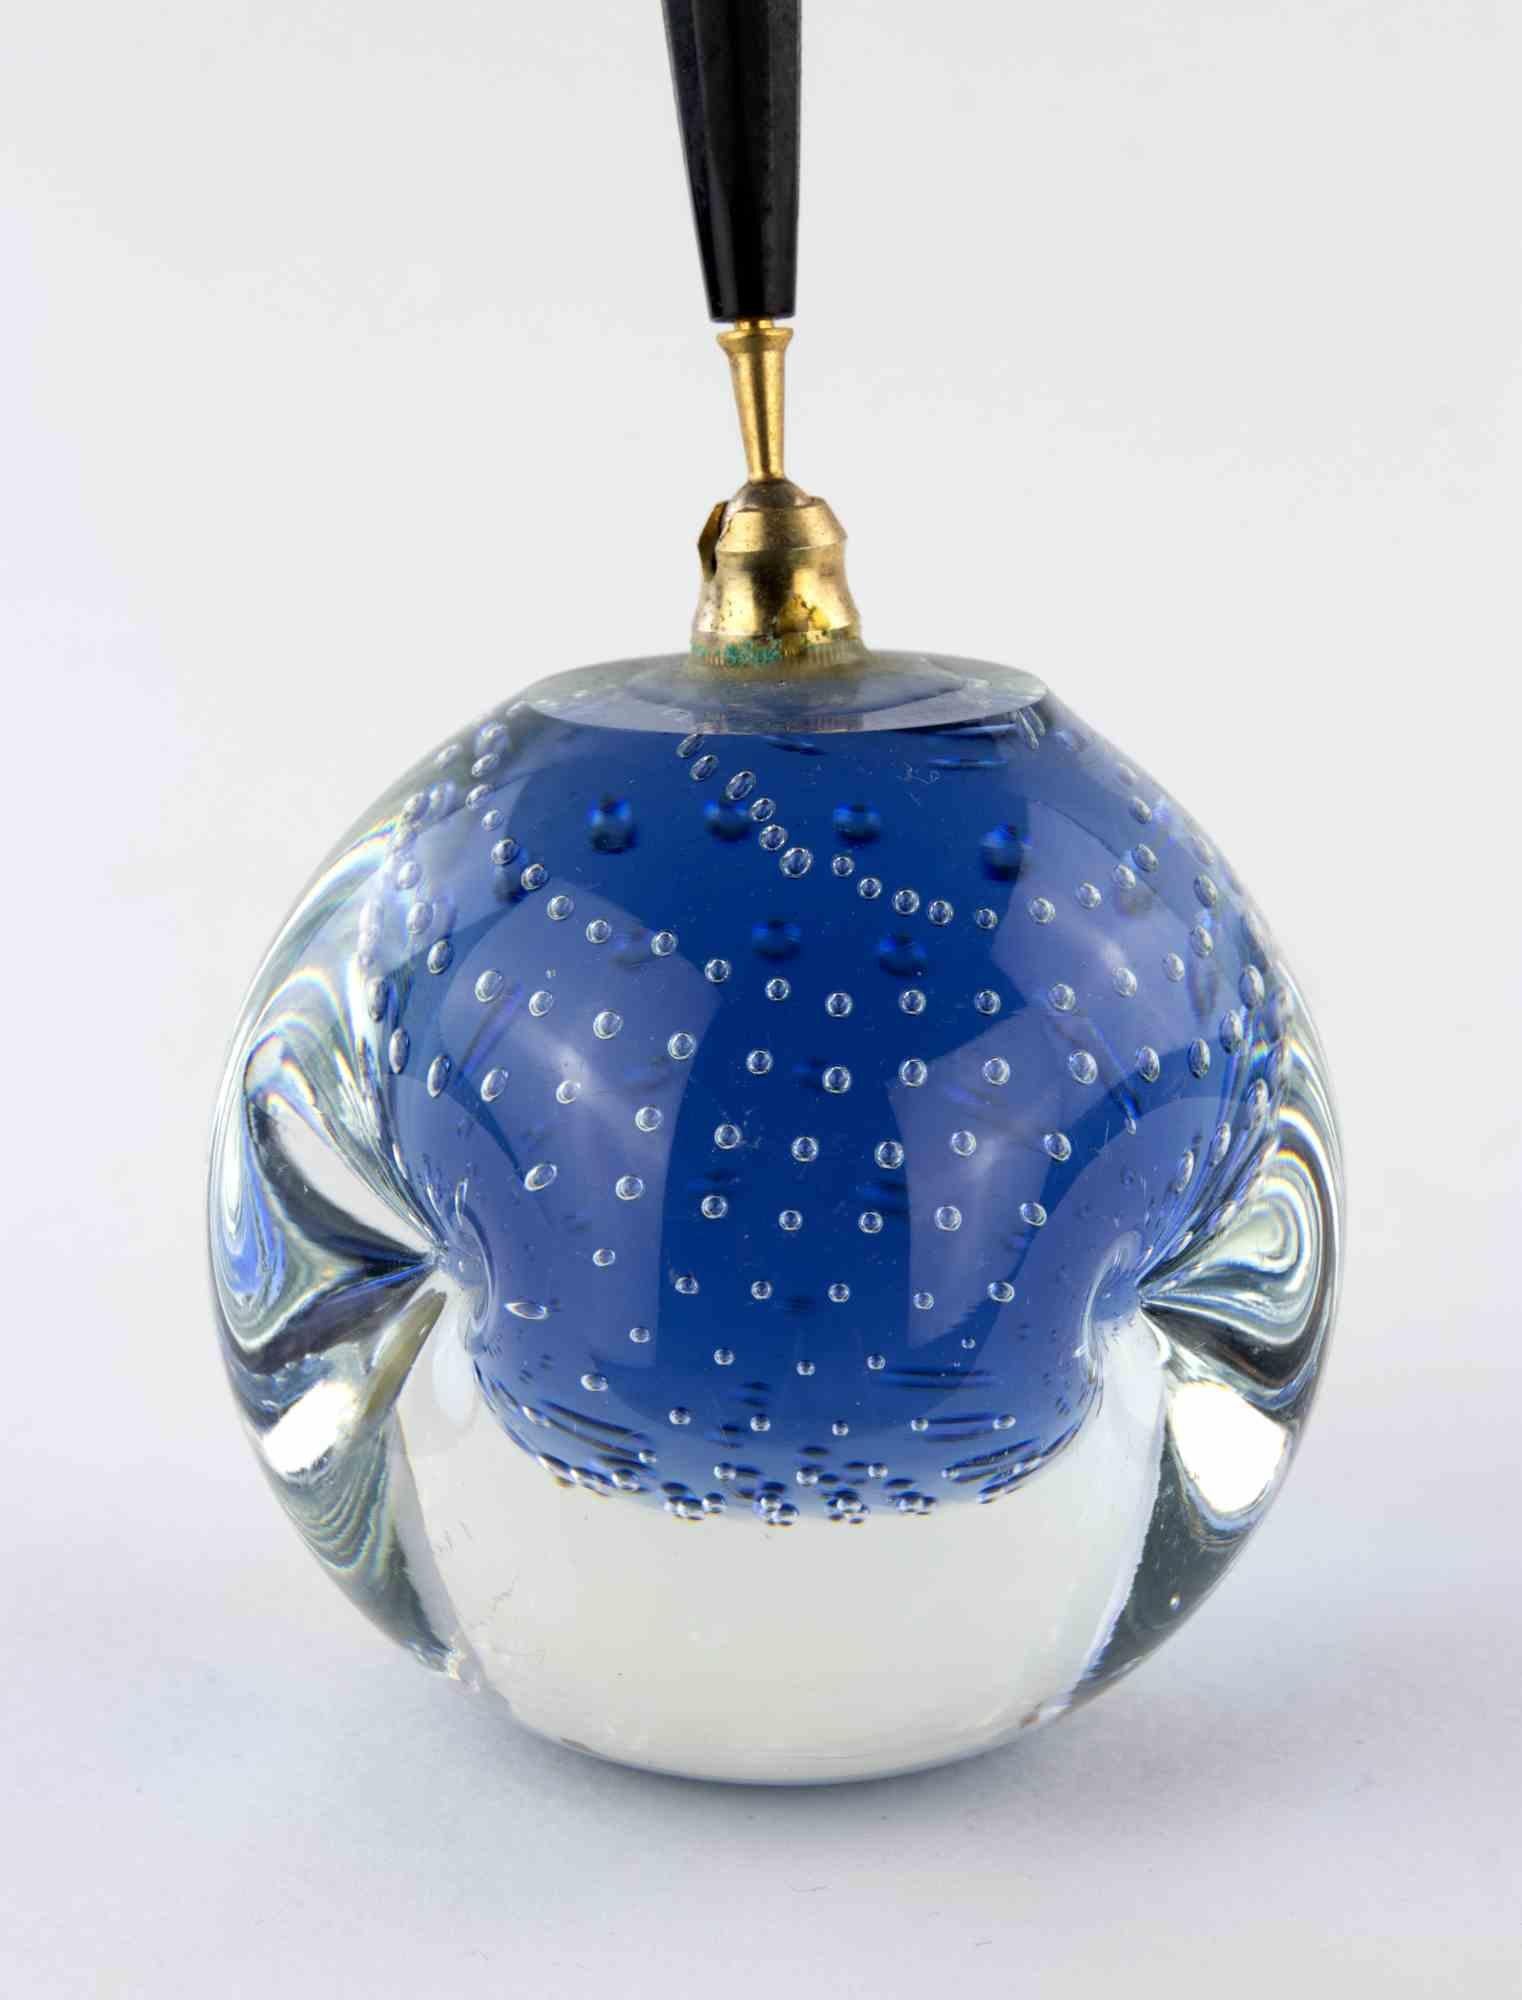 Le porte-plume de Murano est un objet décoratif réalisé dans les années 1970.

Porte-stylo décoratif en verre de Murano de couleur bleue.

Un objet élégant à collectionner.